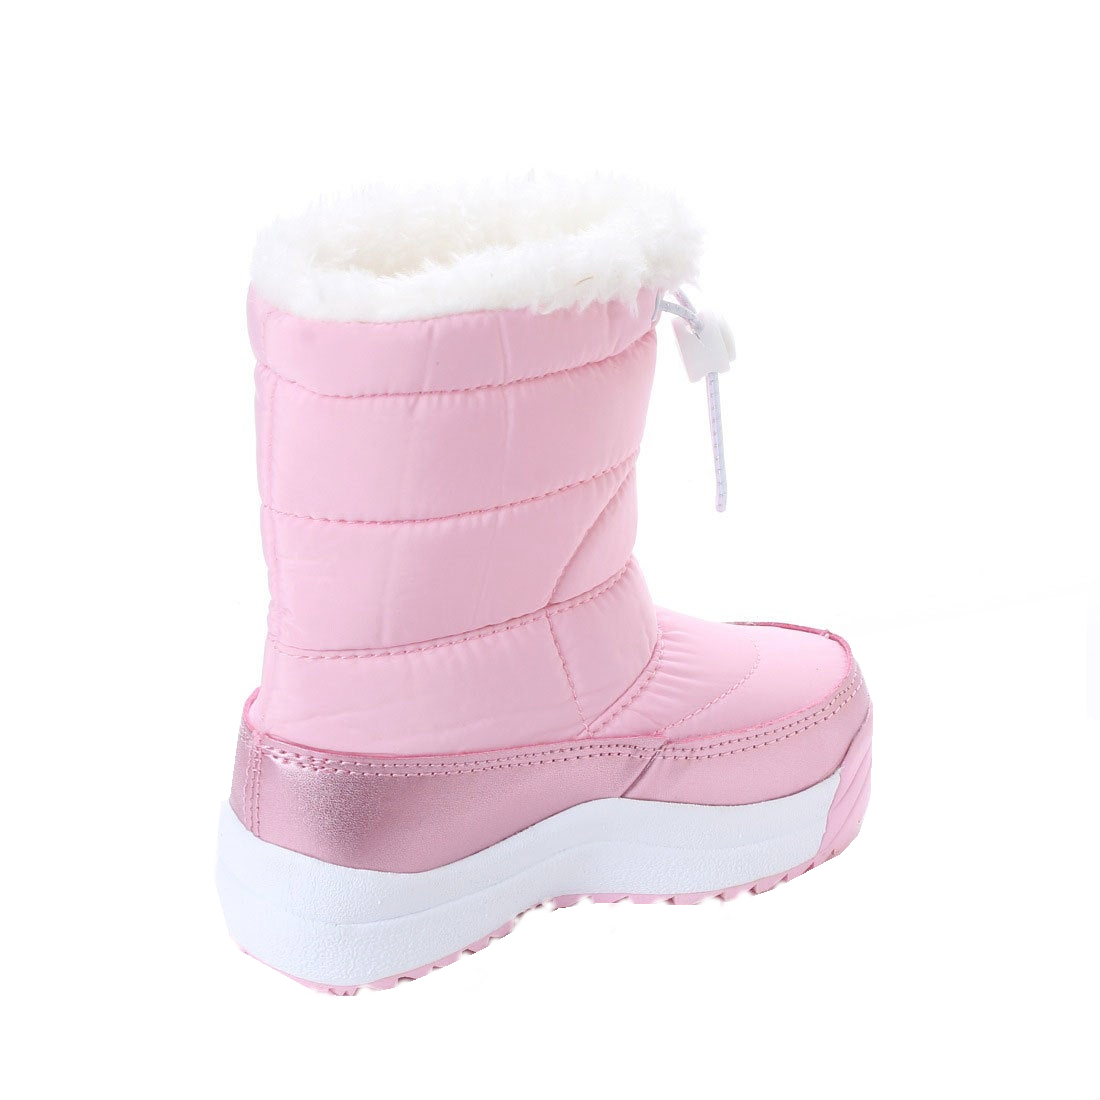 [17982_PINK_20.0] для девочки down ботинки защищающий от холода обувь боты легкий &. скользить низ с хлопком флис & боа подкладка посещение школы для 16.0~24.0cm